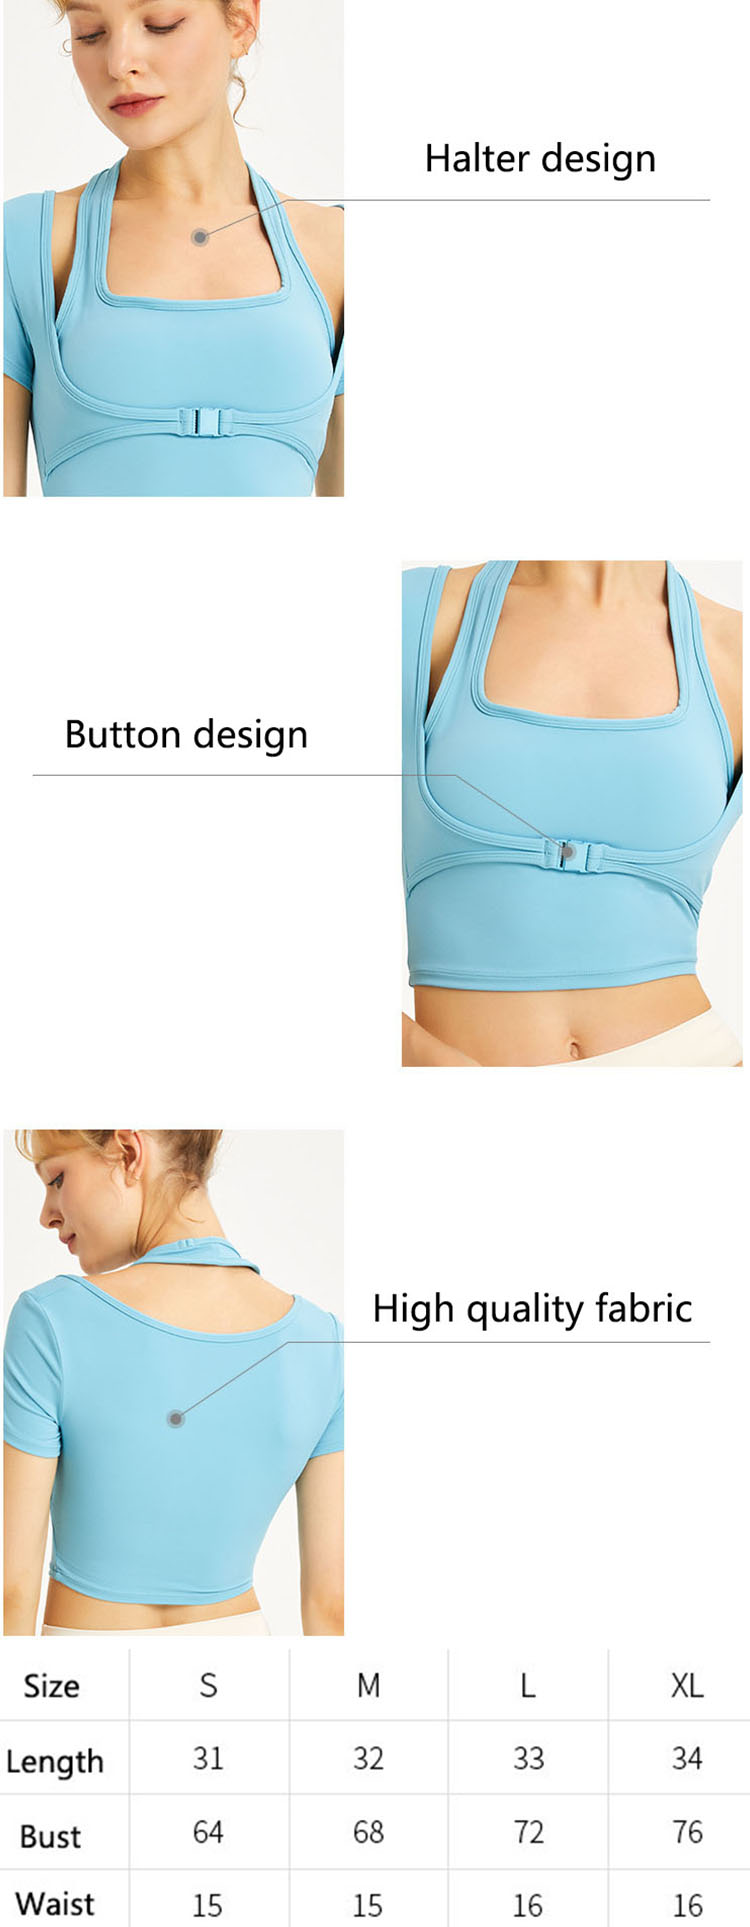 Halter neck sports top design is a common design point of summer underwear